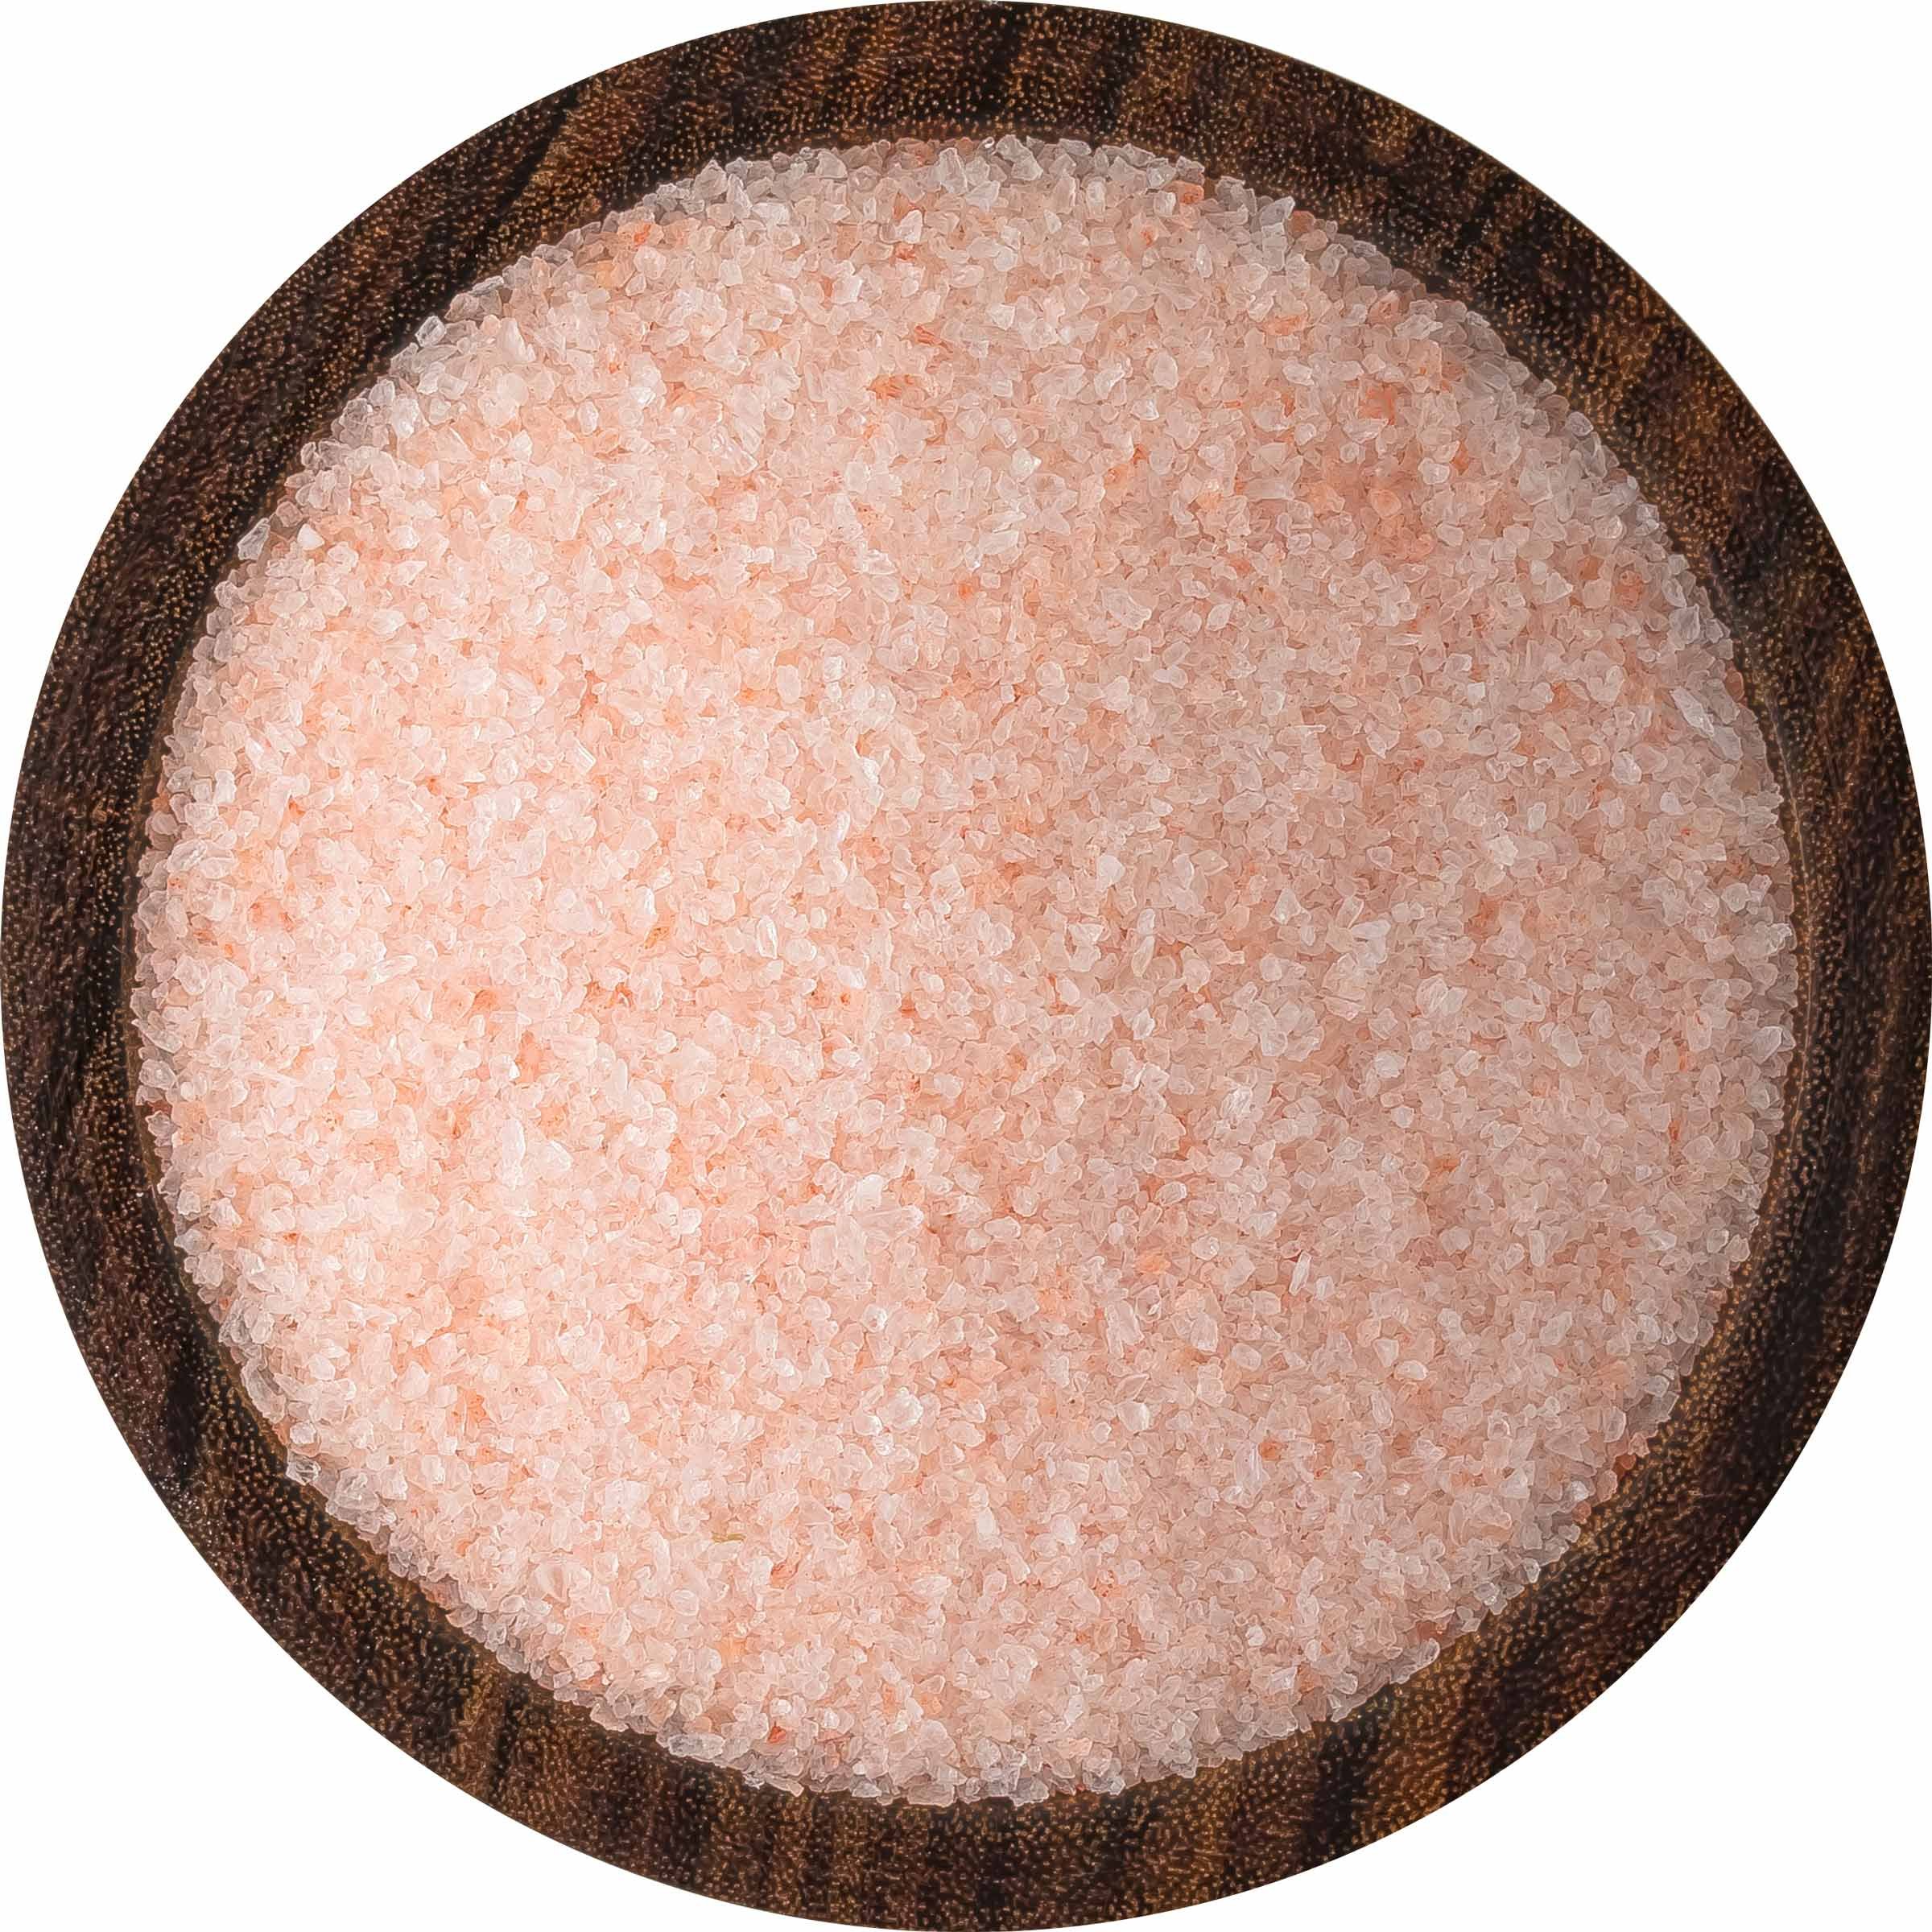 Bulk Himalayan Salt - 55 lb. Coarse Crystals - TouchAmerica